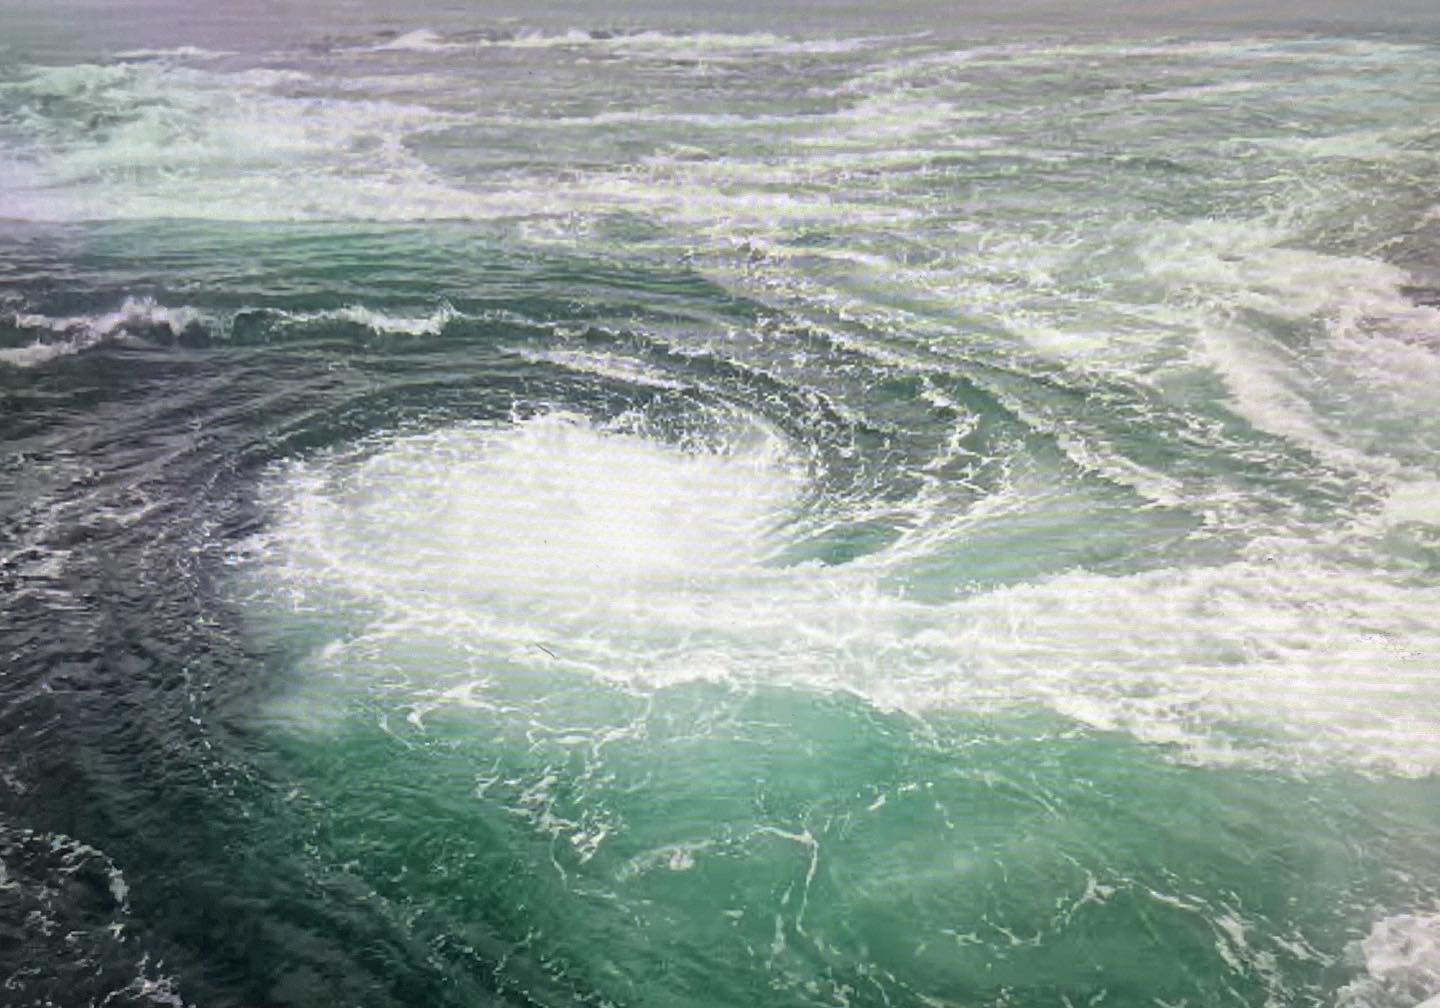 #鳴門の渦潮！鳴門海峡は瀬戸内海と紀伊水道というふたつの海域の間に存在する幅約1､3kmの海峡です。２つの海域は潮の干満のタイミングが異なり1日4回約1〜1.5mの水位差が生まれることから激しい潮流が起き、渦潮が発生します。